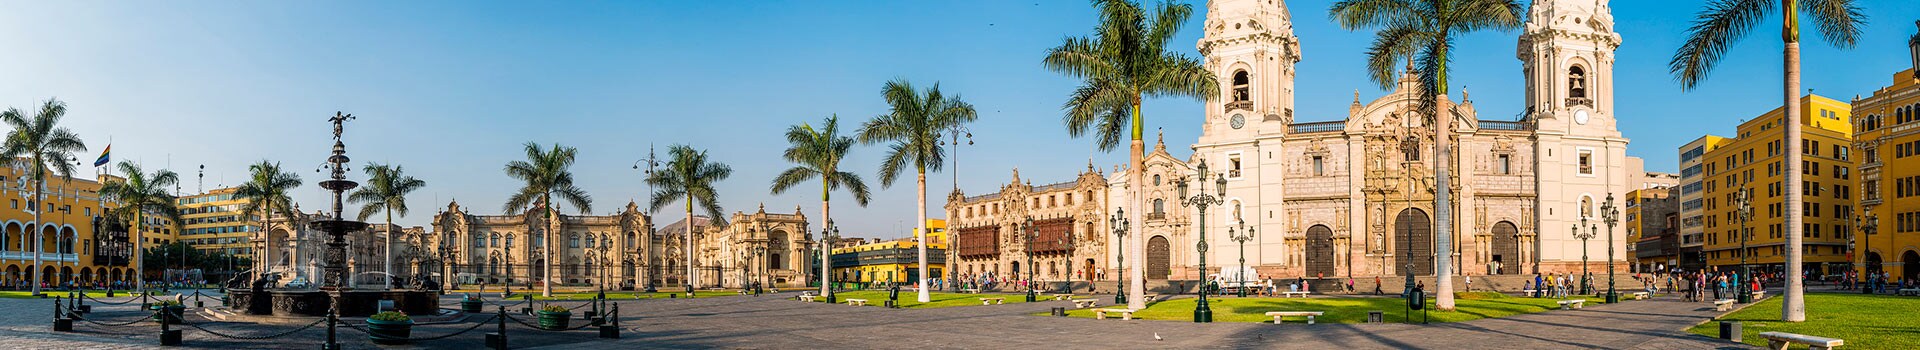 Panama city - Lima